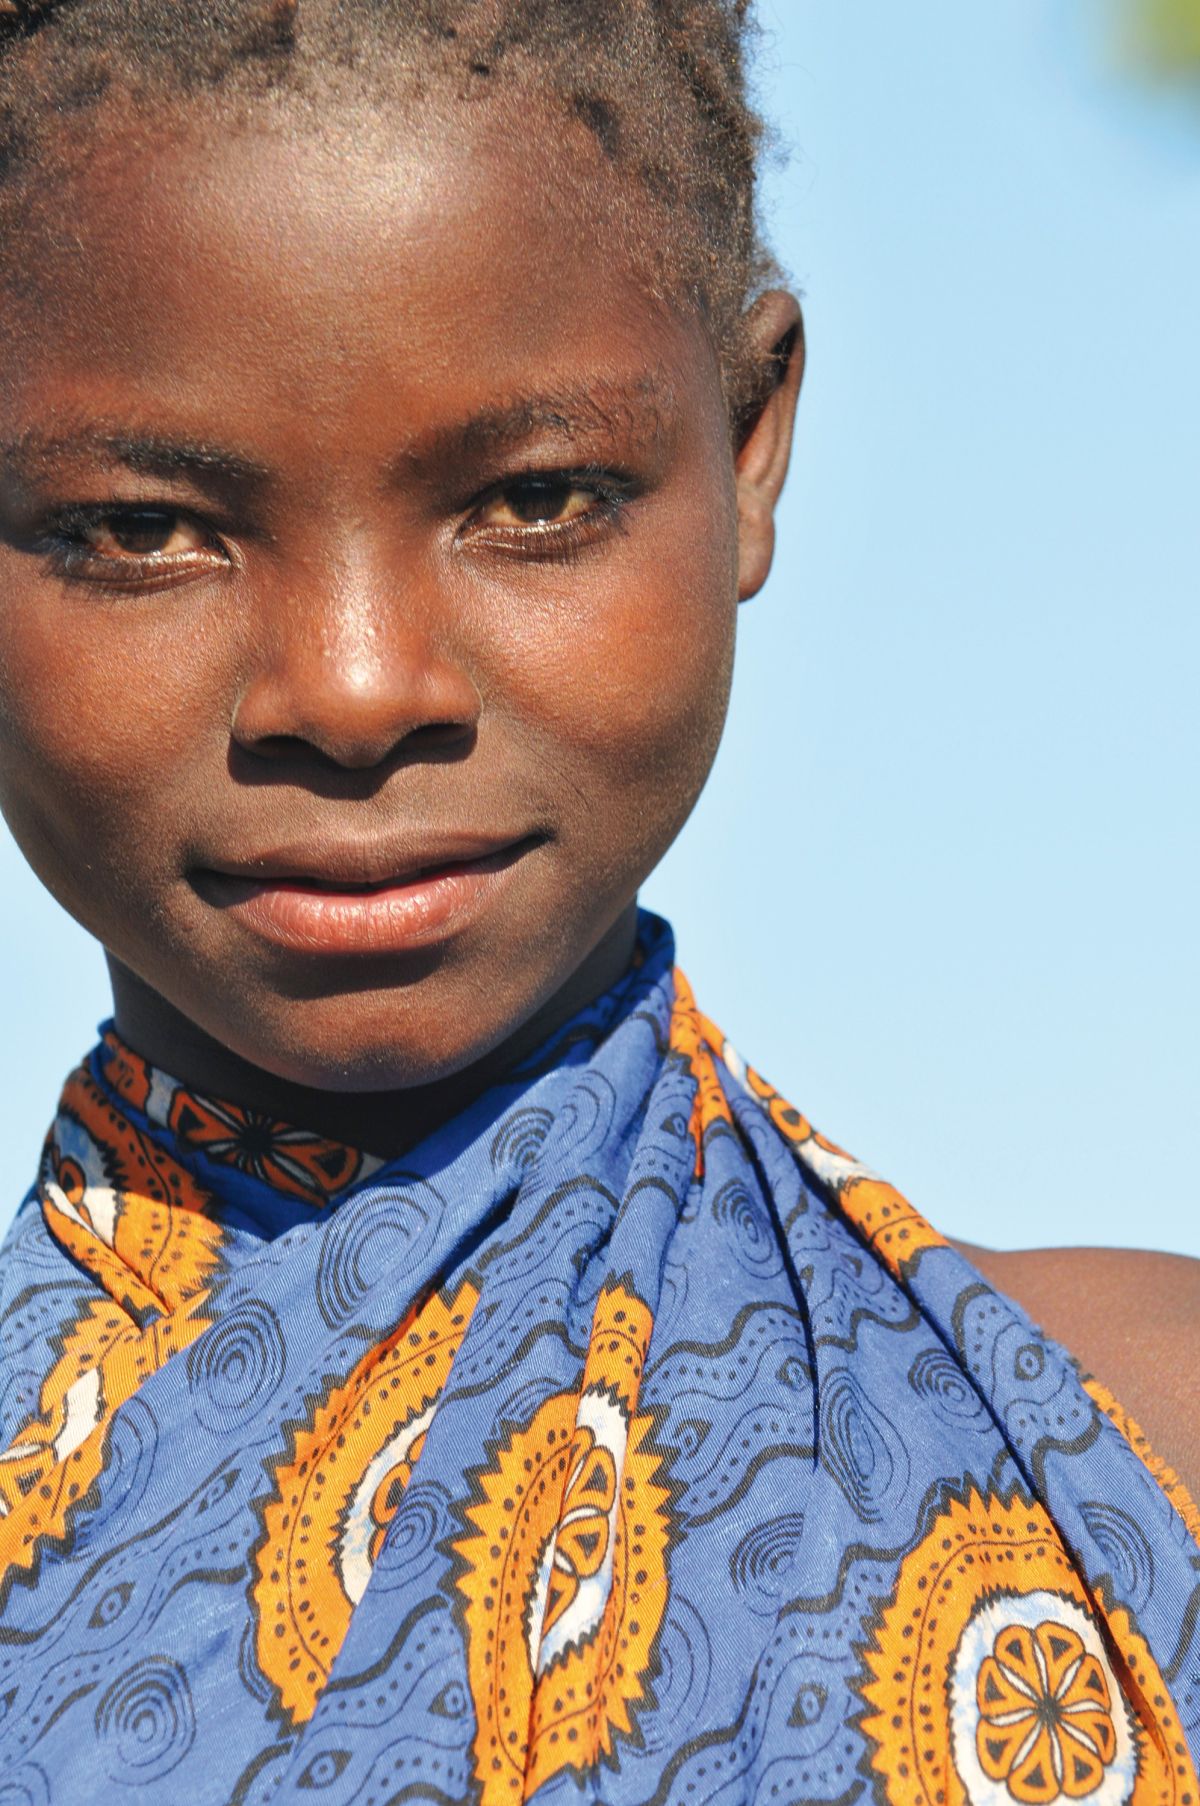 Freundliches Mädchen, Mosambik